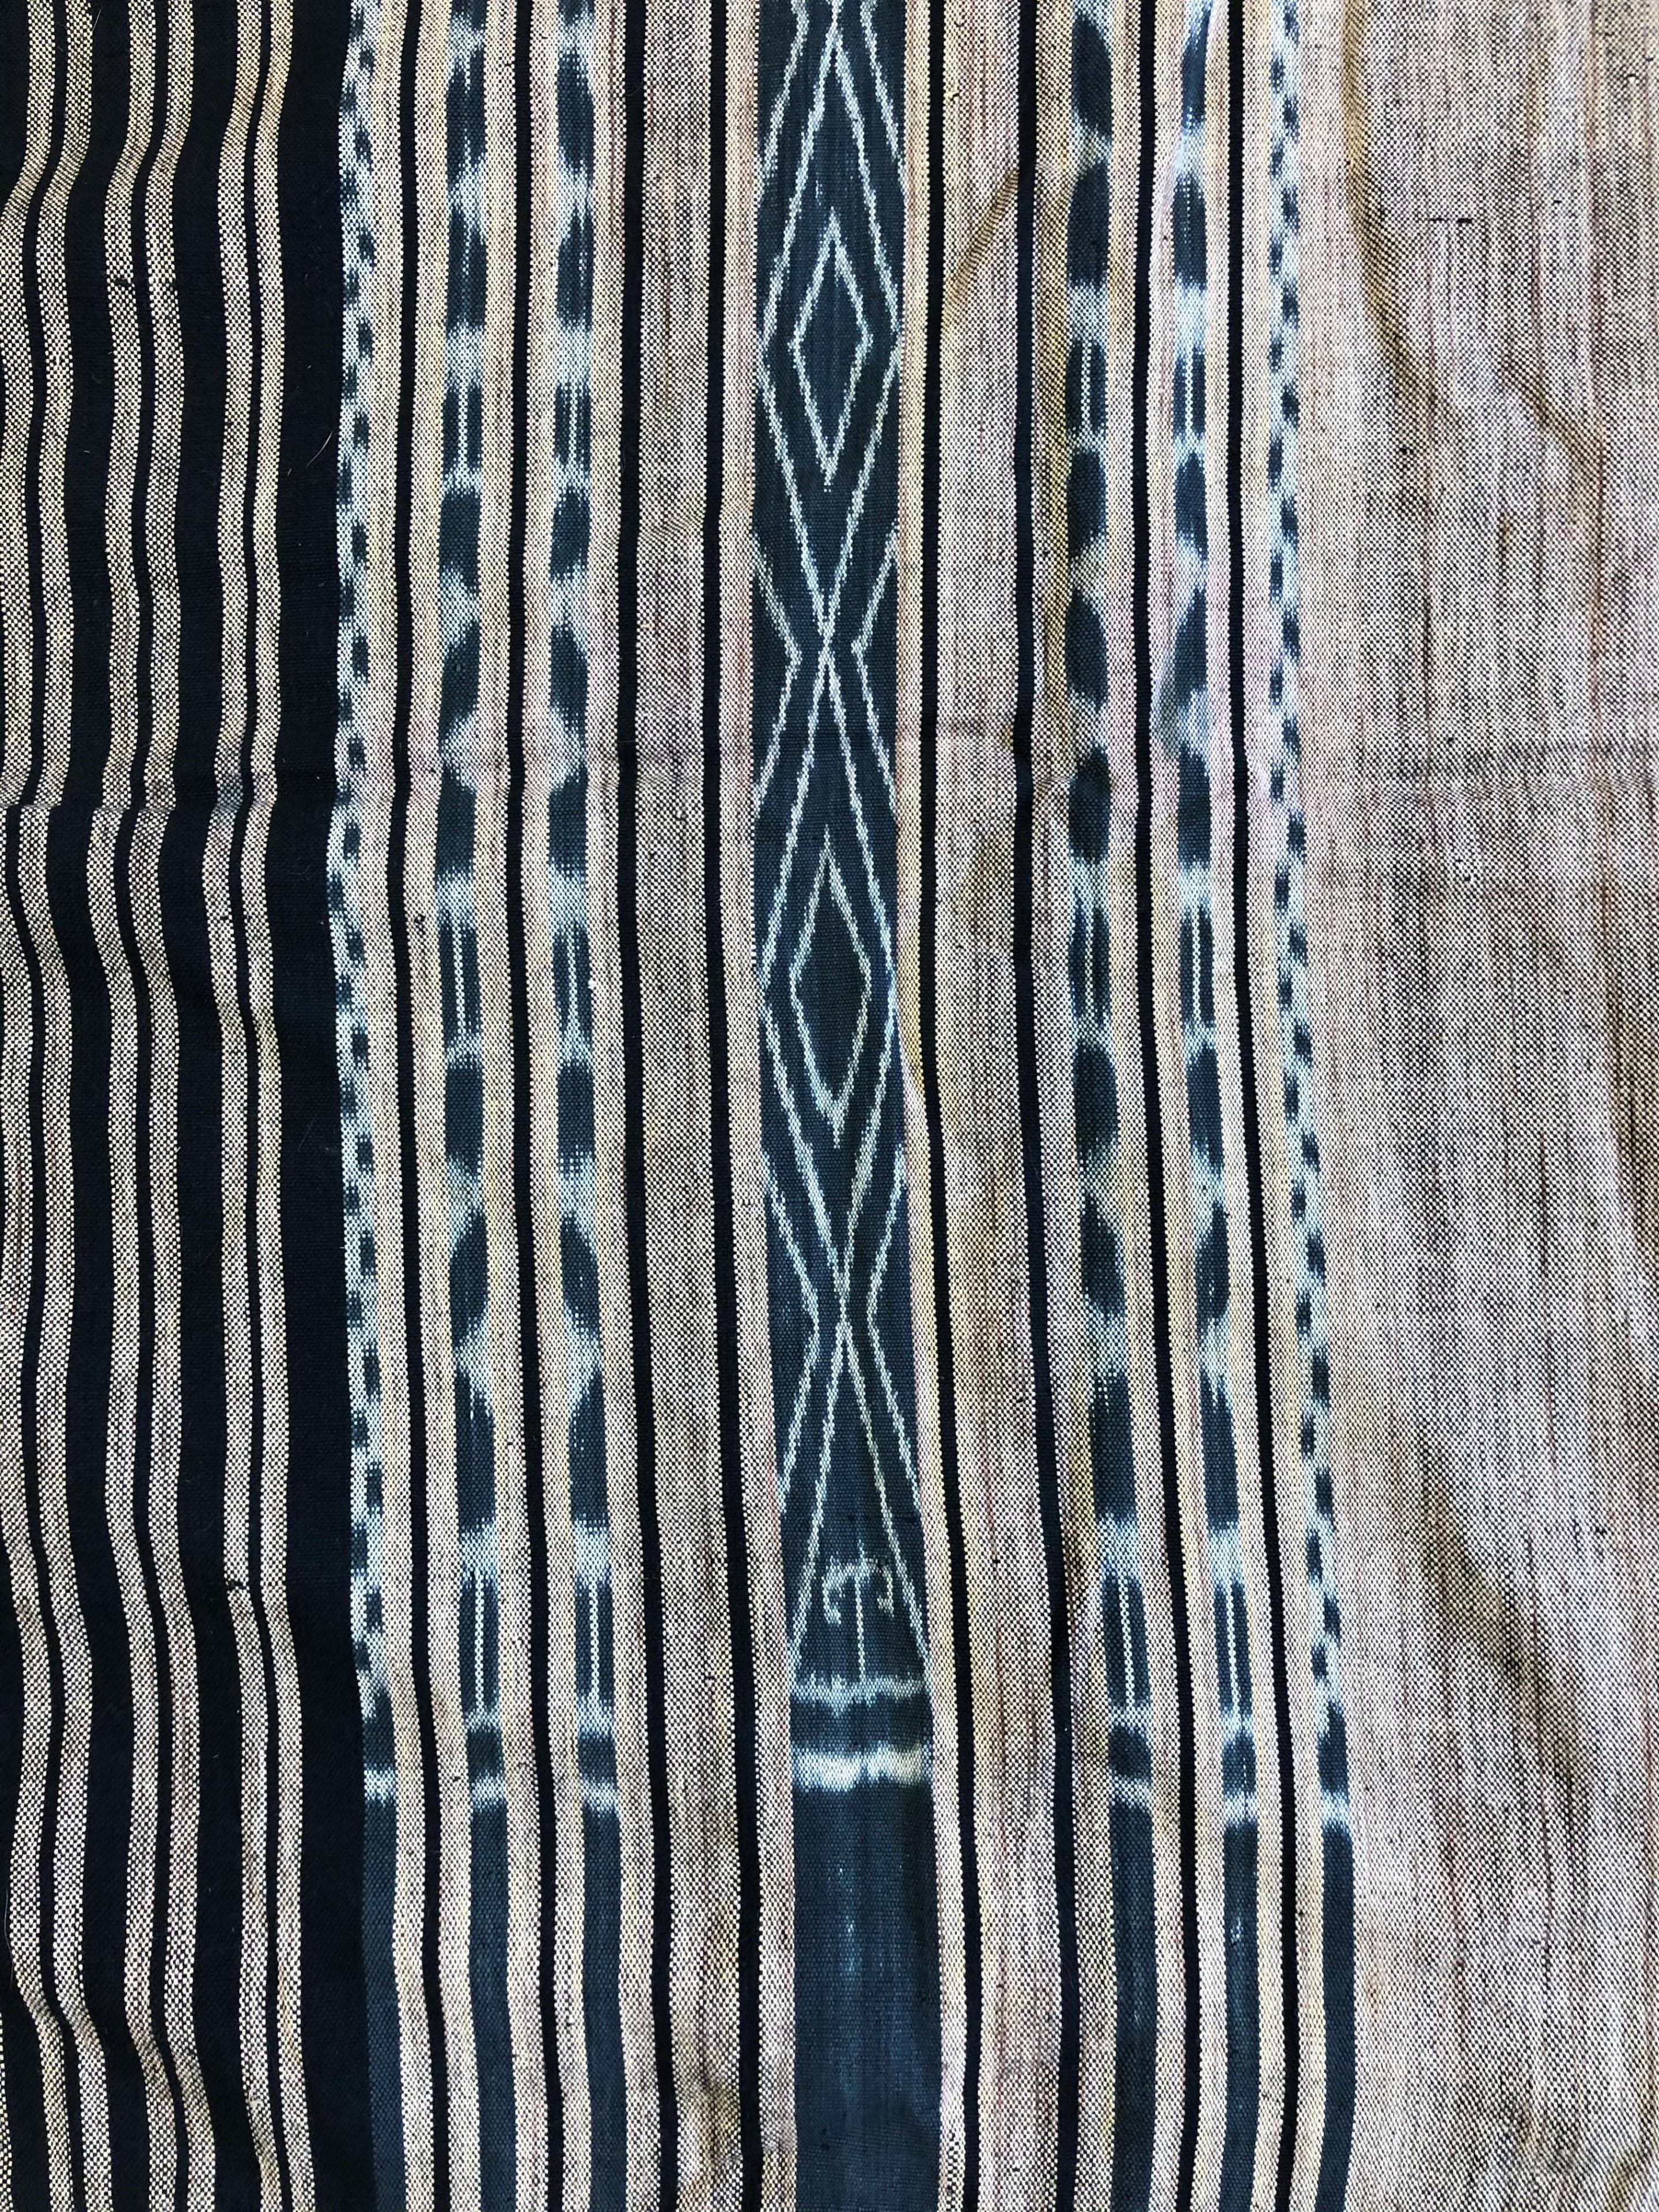 Tanimbar, two sarongs - Image 2 of 3